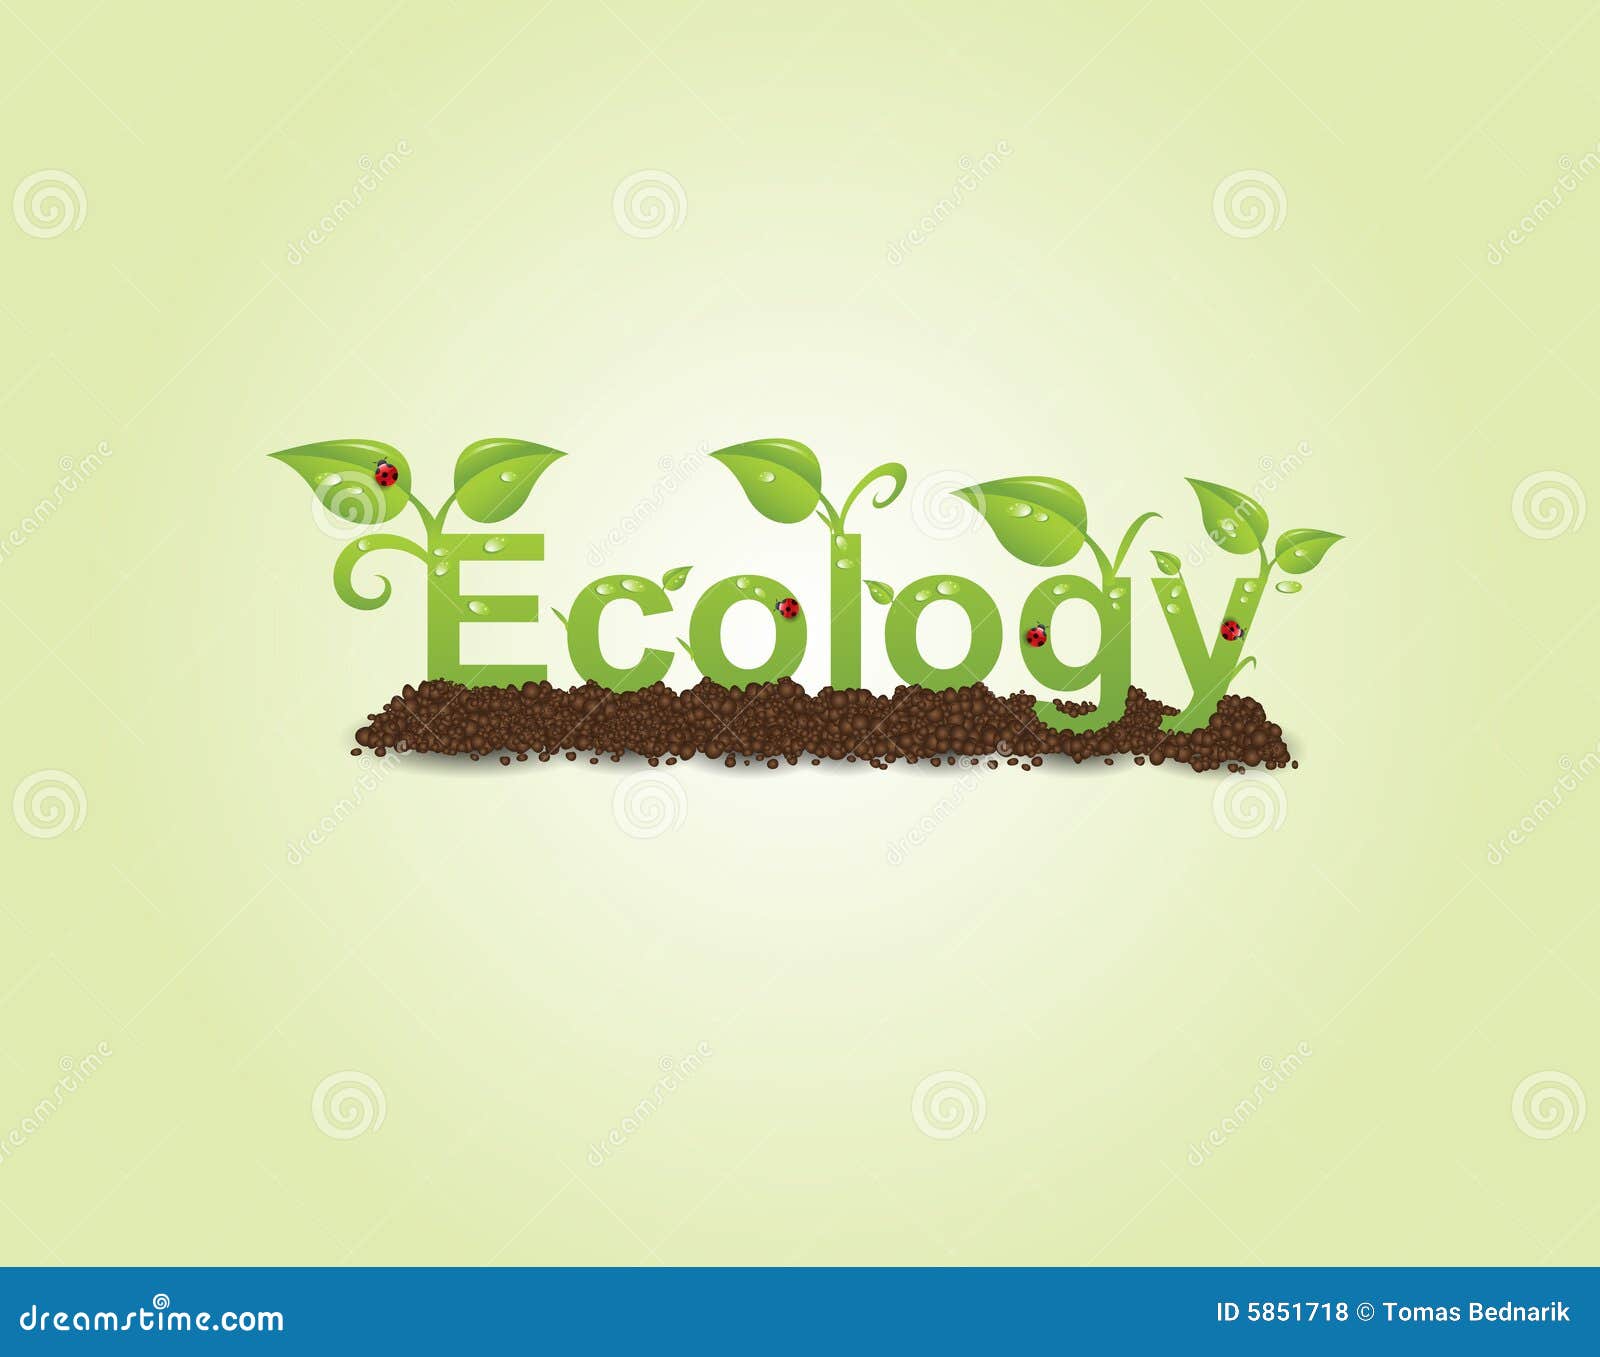 ecology caption